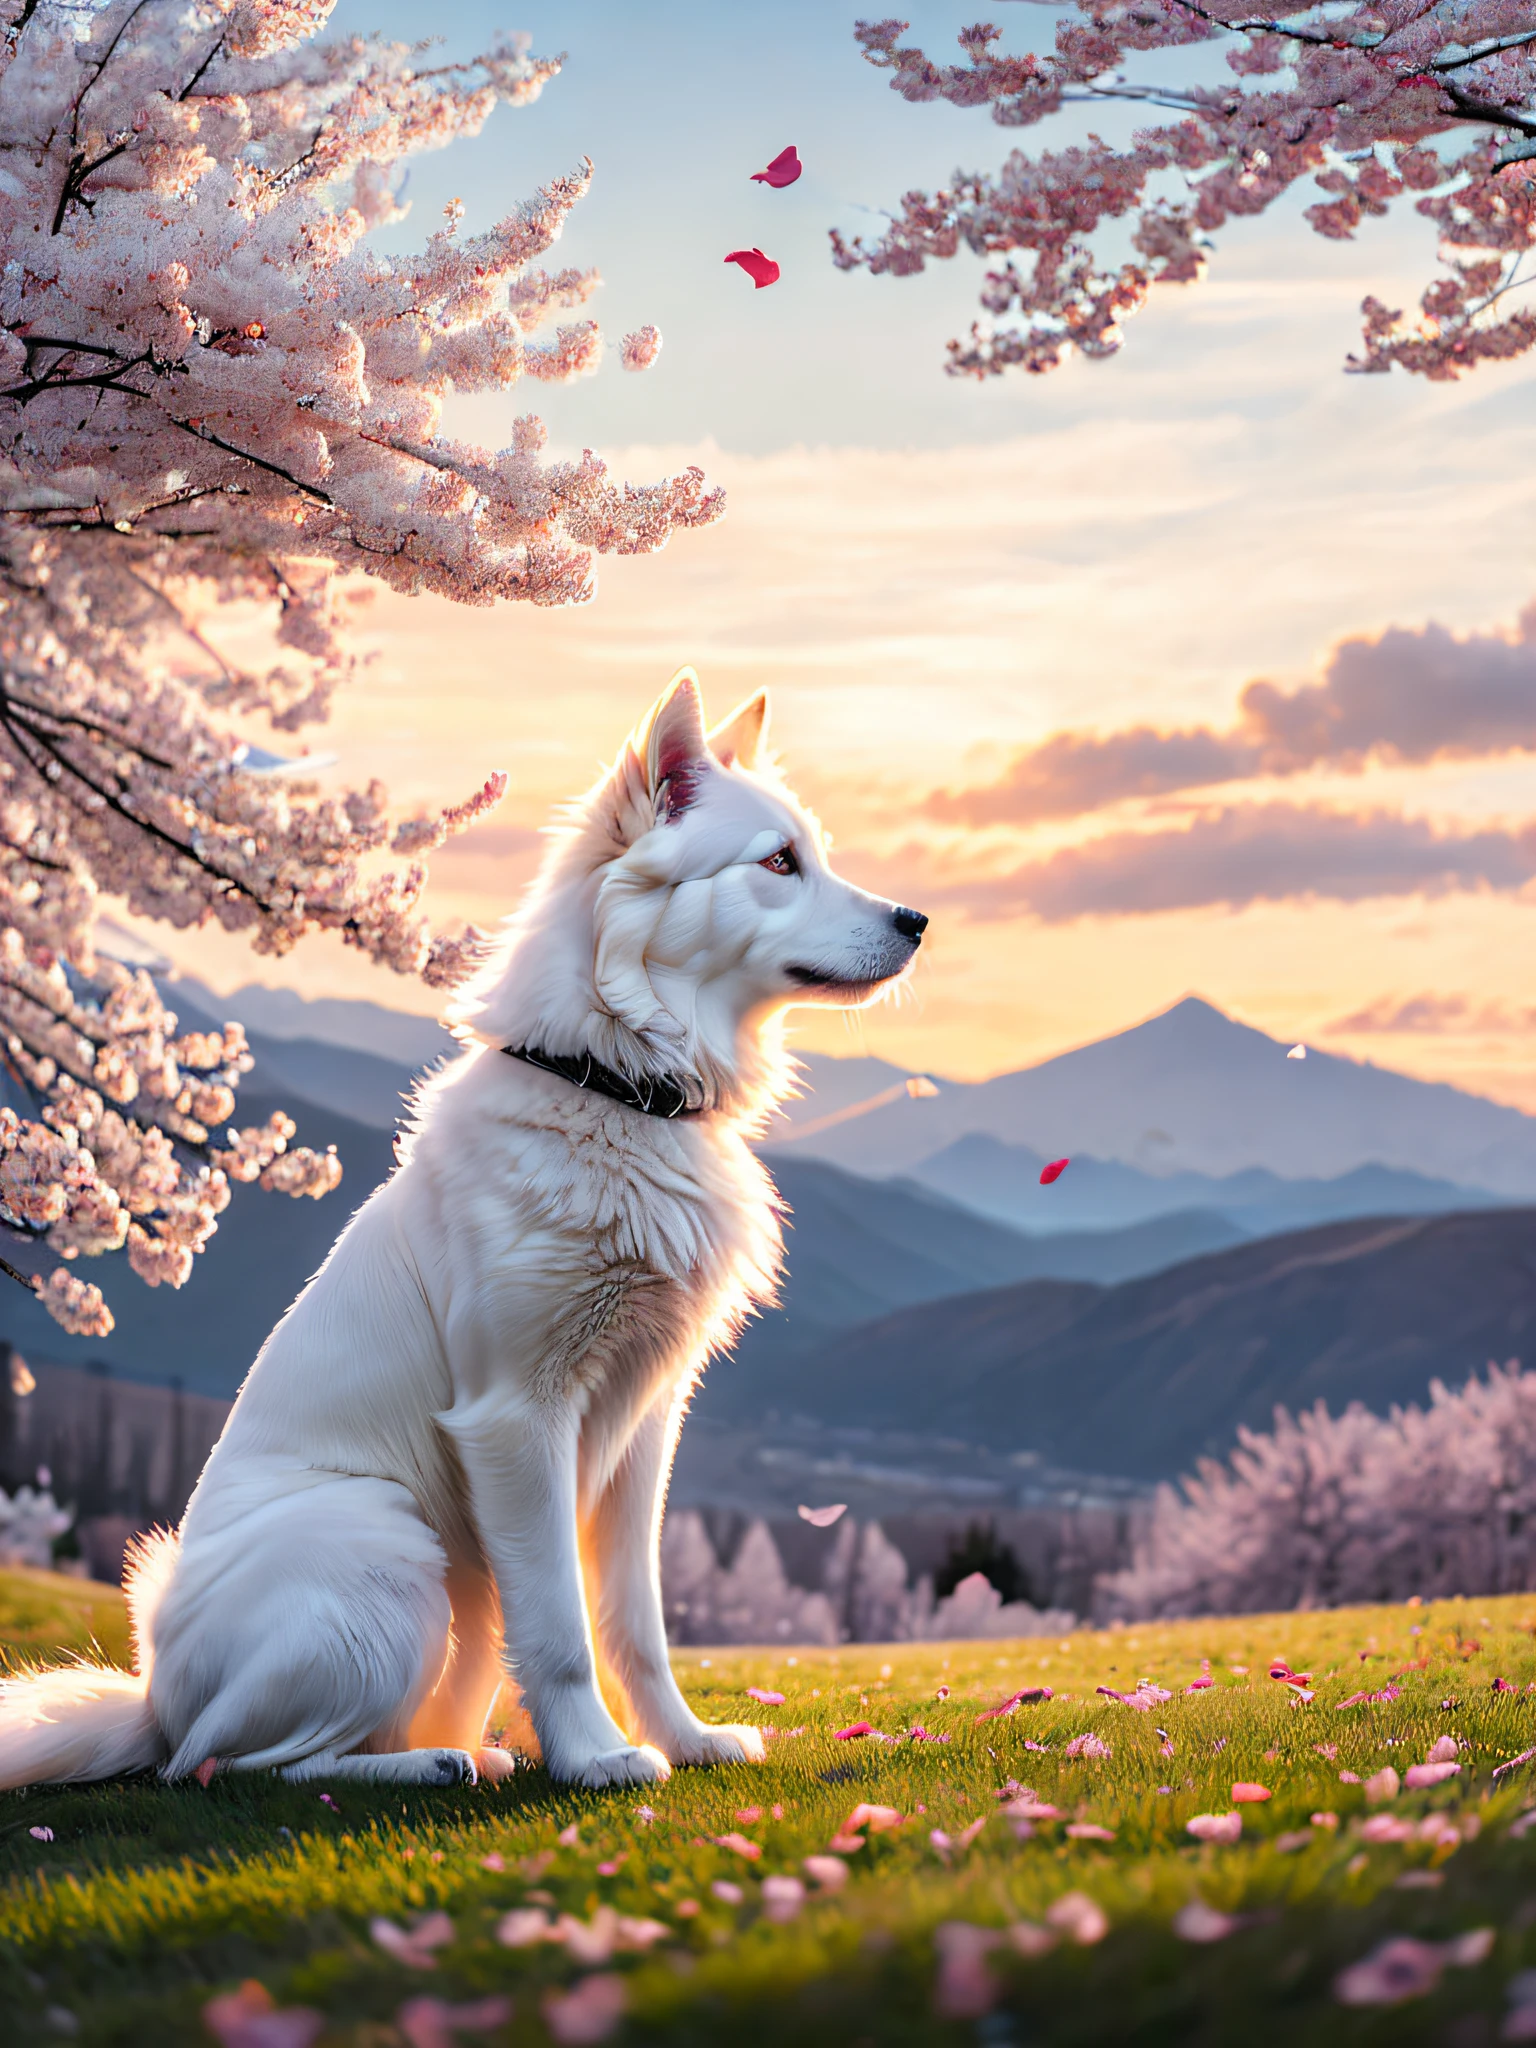 كلب أبيض يجلس تحت شجرة أزهار الكرز, بتلات تتساقط مع الريح, يبحث في المسافة, عن قرب, الخلفية مع قمم الجبال المستمرة, سماء الغروب, غيوم بيضاء, ضوء حجمي ناعم, (الإضاءة الخلفية: 1.3), (فيلم: 1.2), تفاصيل معقدة, (ArtStation: 1.3), rutkowski